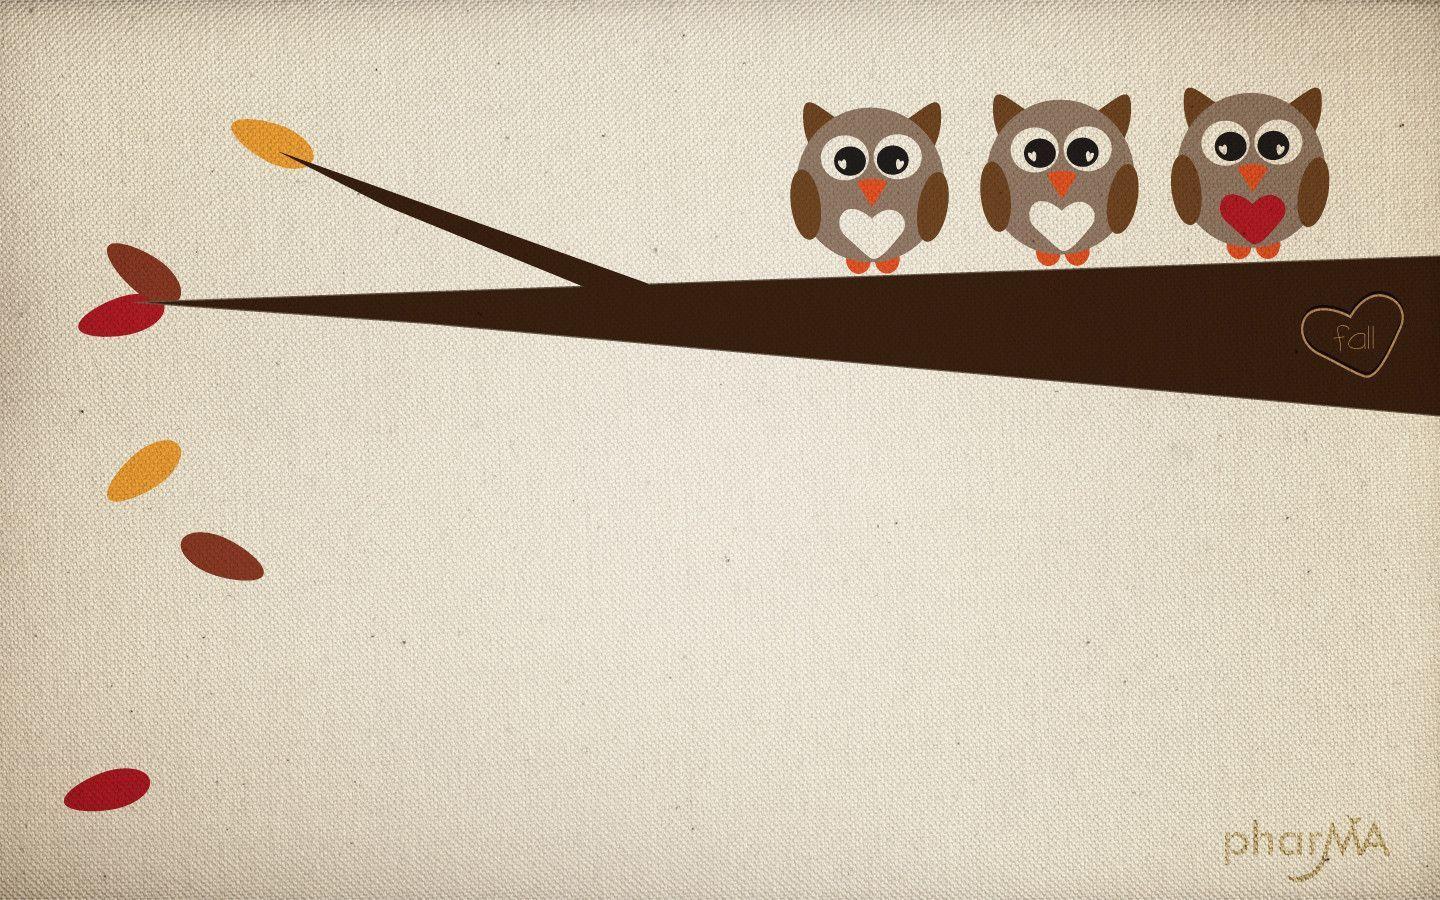 Wallpaper For > Owl Desktop Wallpaper